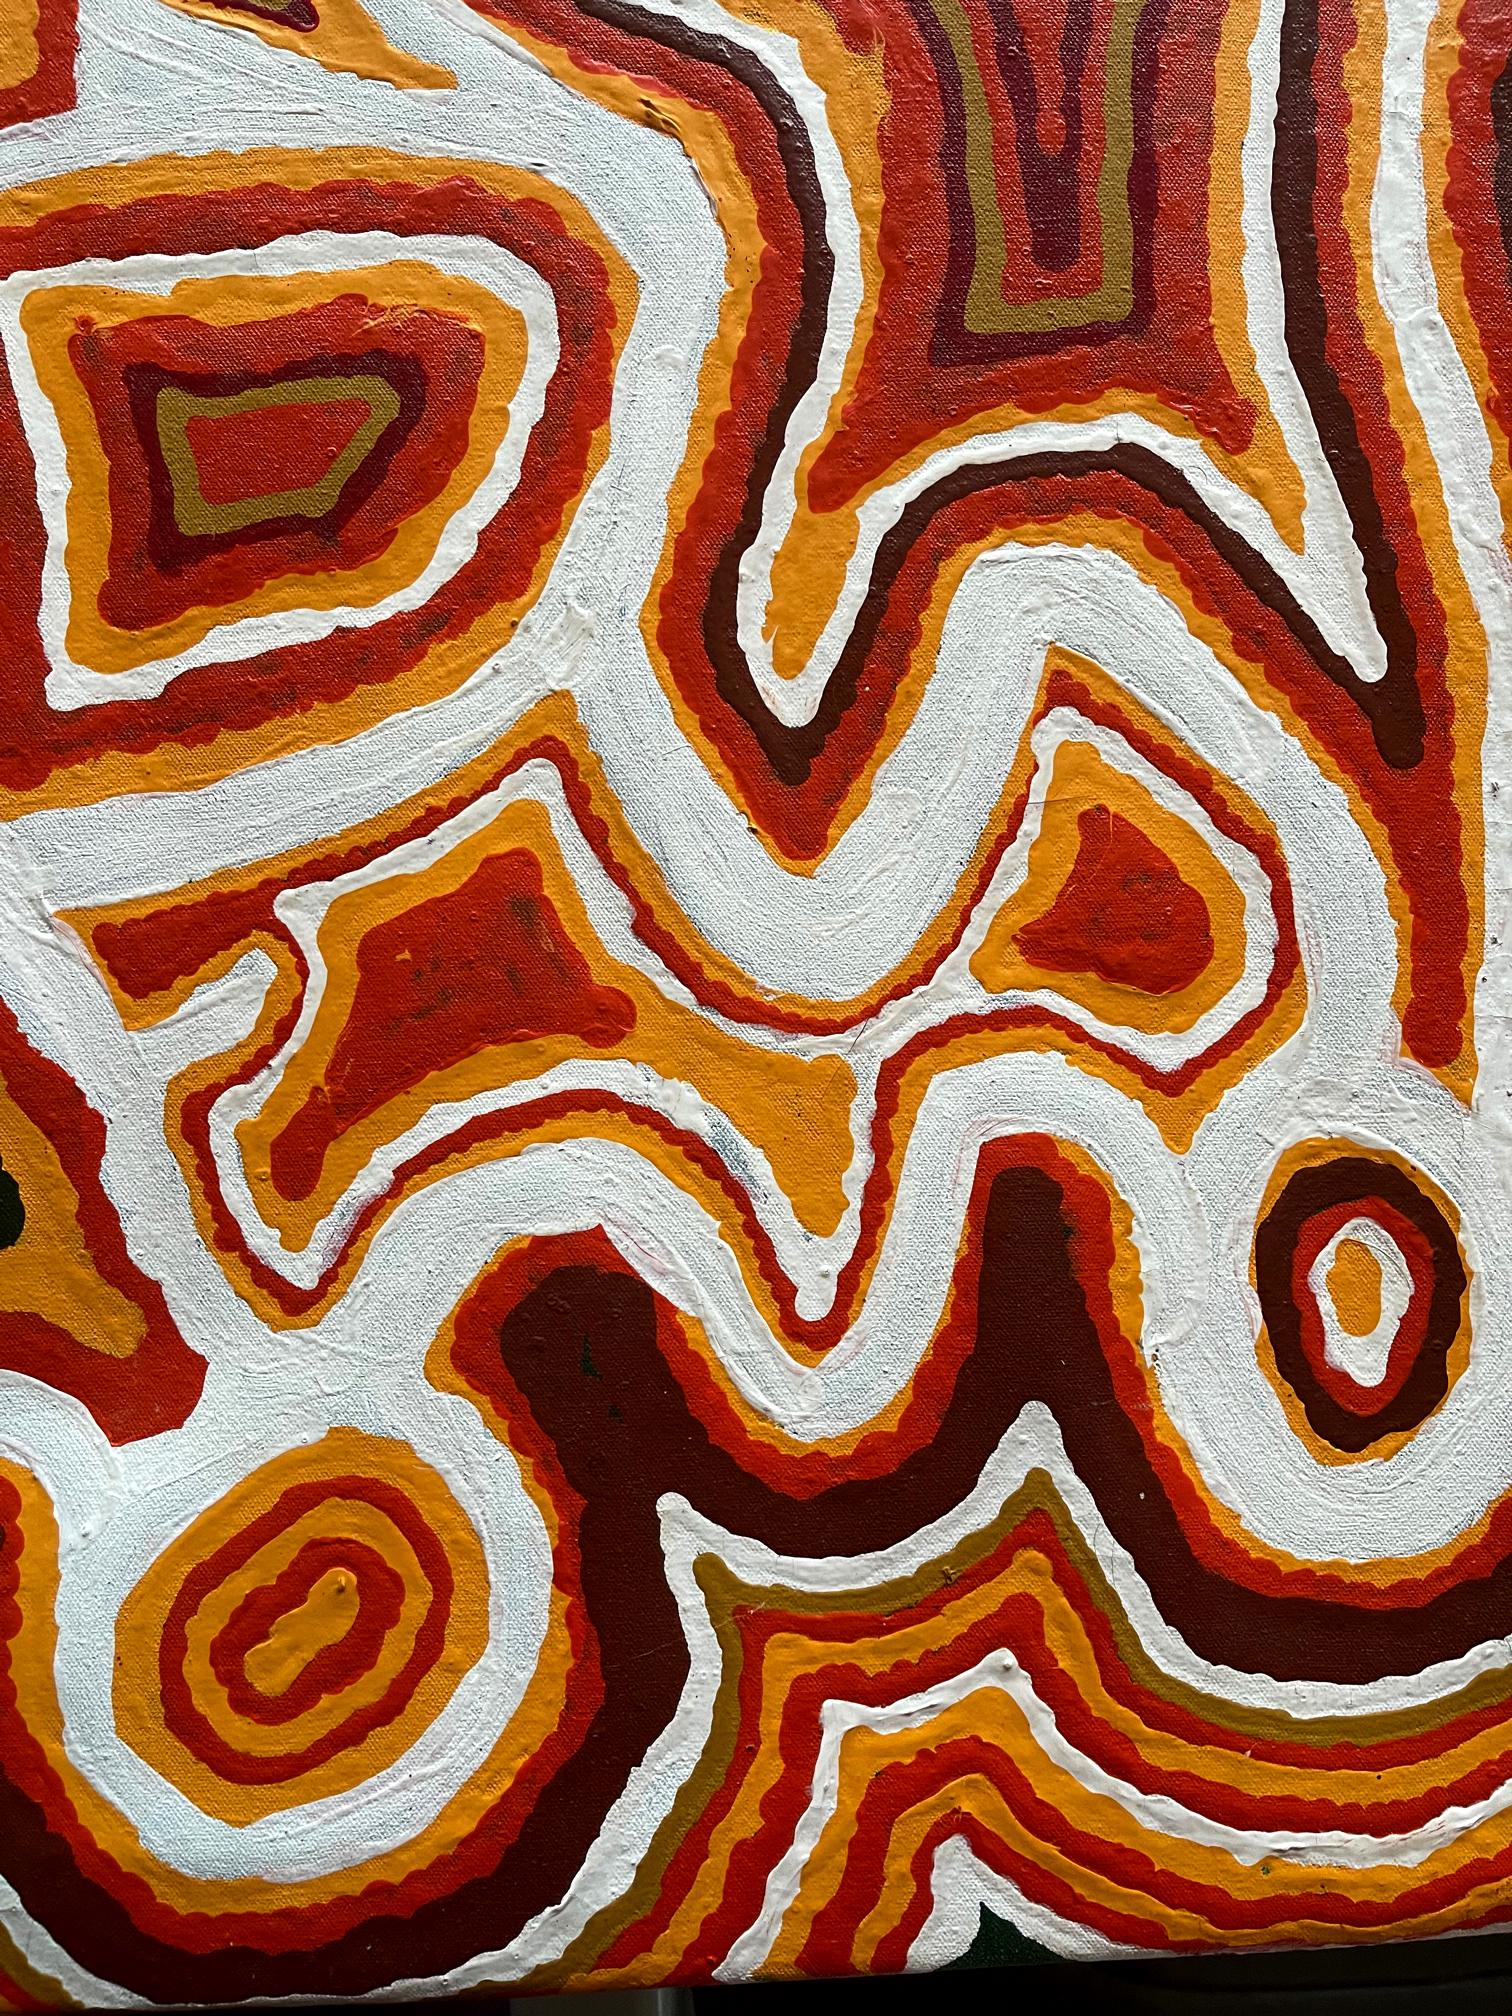 Hand-Painted Australian Aboriginal Painting 